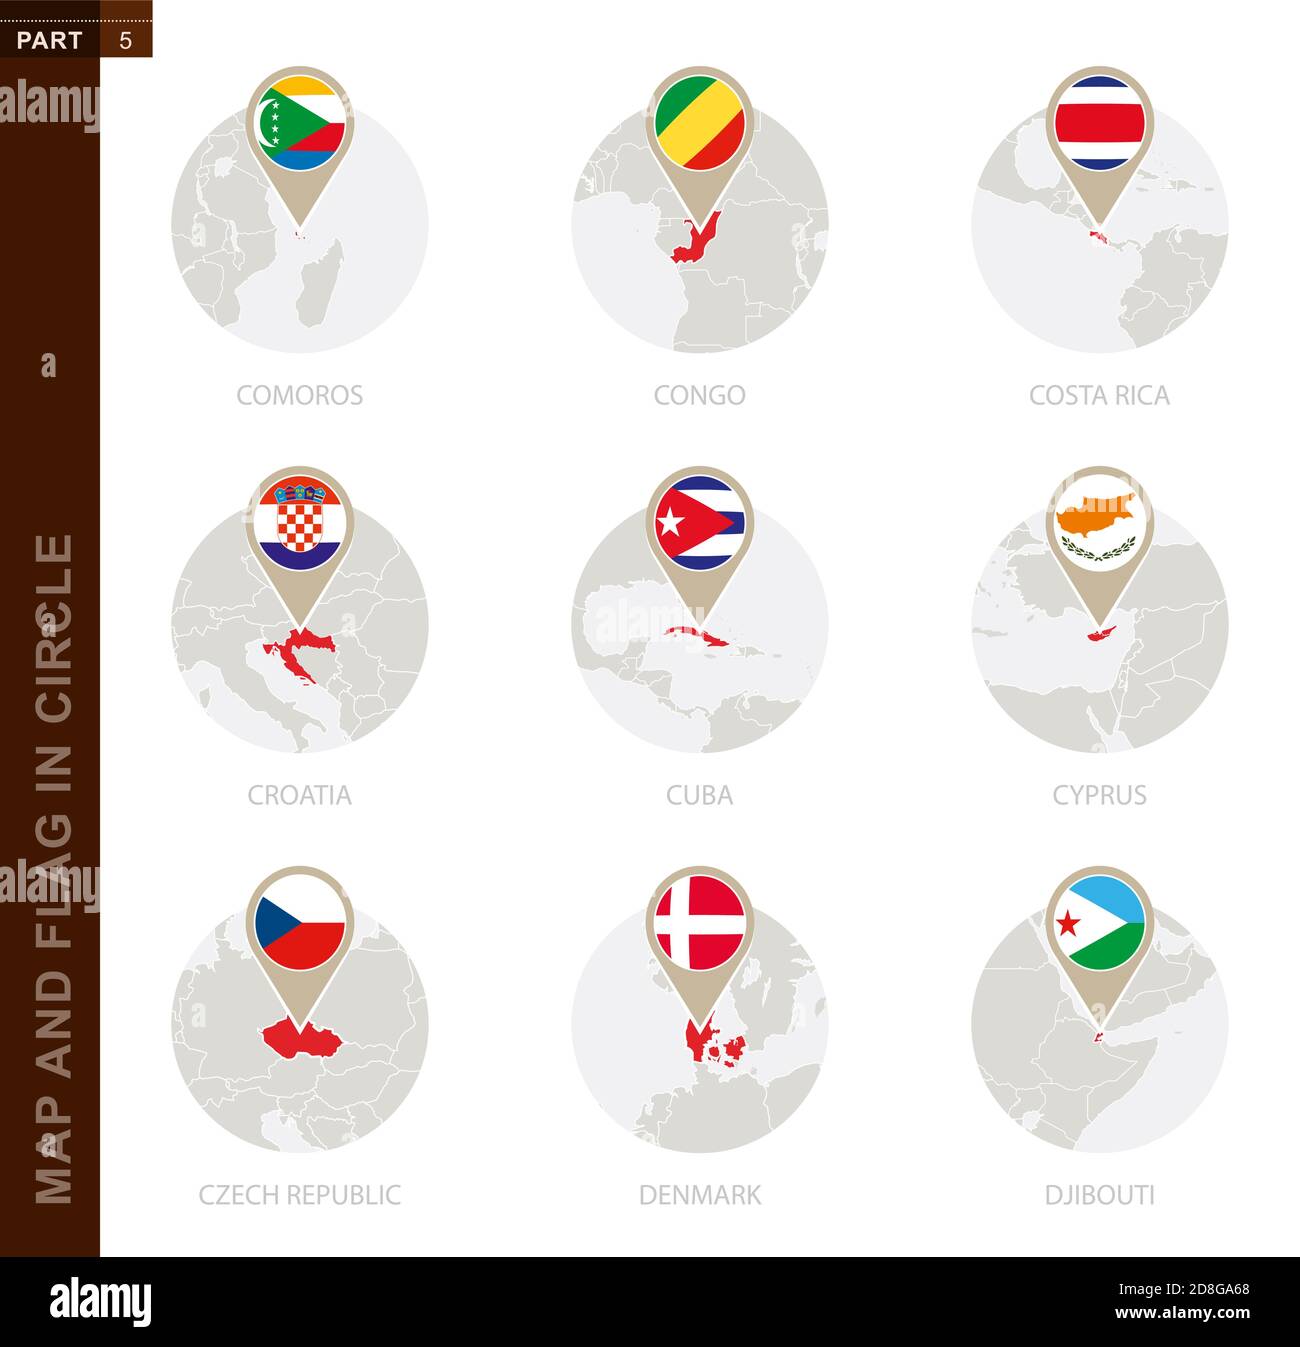 Map and Flag in a circle of 9 Countries: Comoros, Congo, Costa Rica, Croatia, Cuba, Cyprus, Czech Republic, Denmark, Djibouti Stock Vector